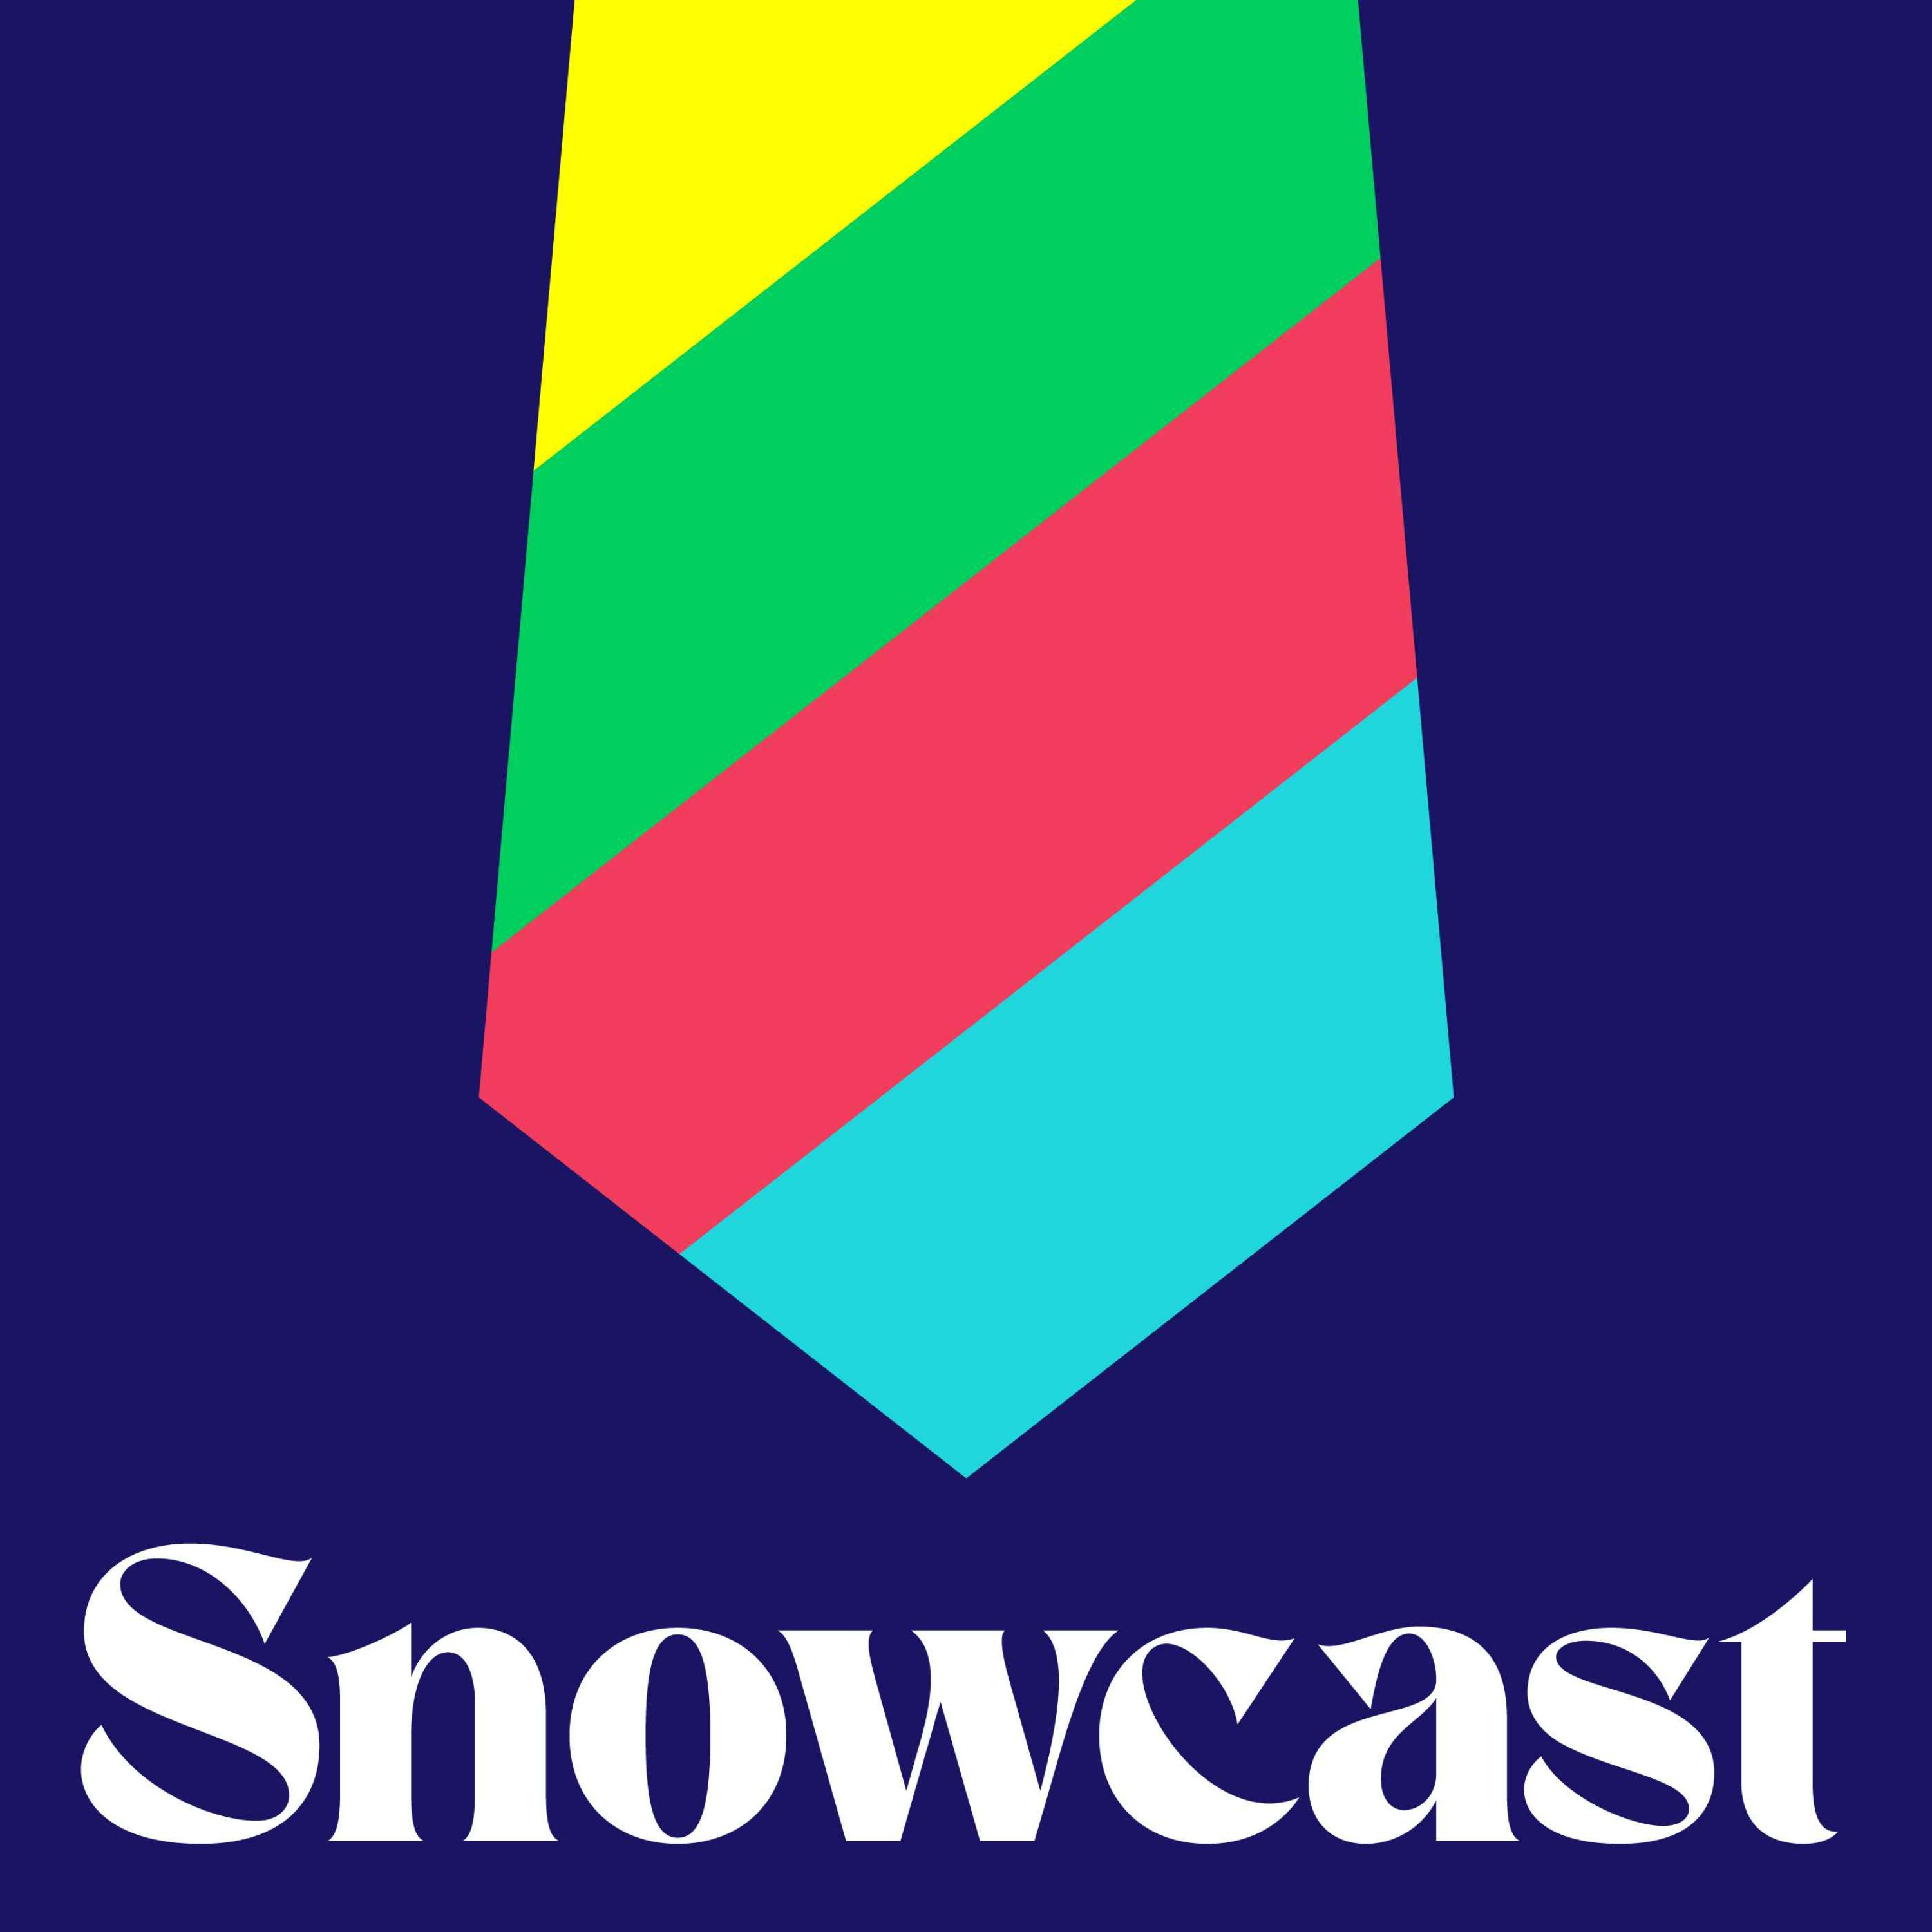 Snowcast podcast show image